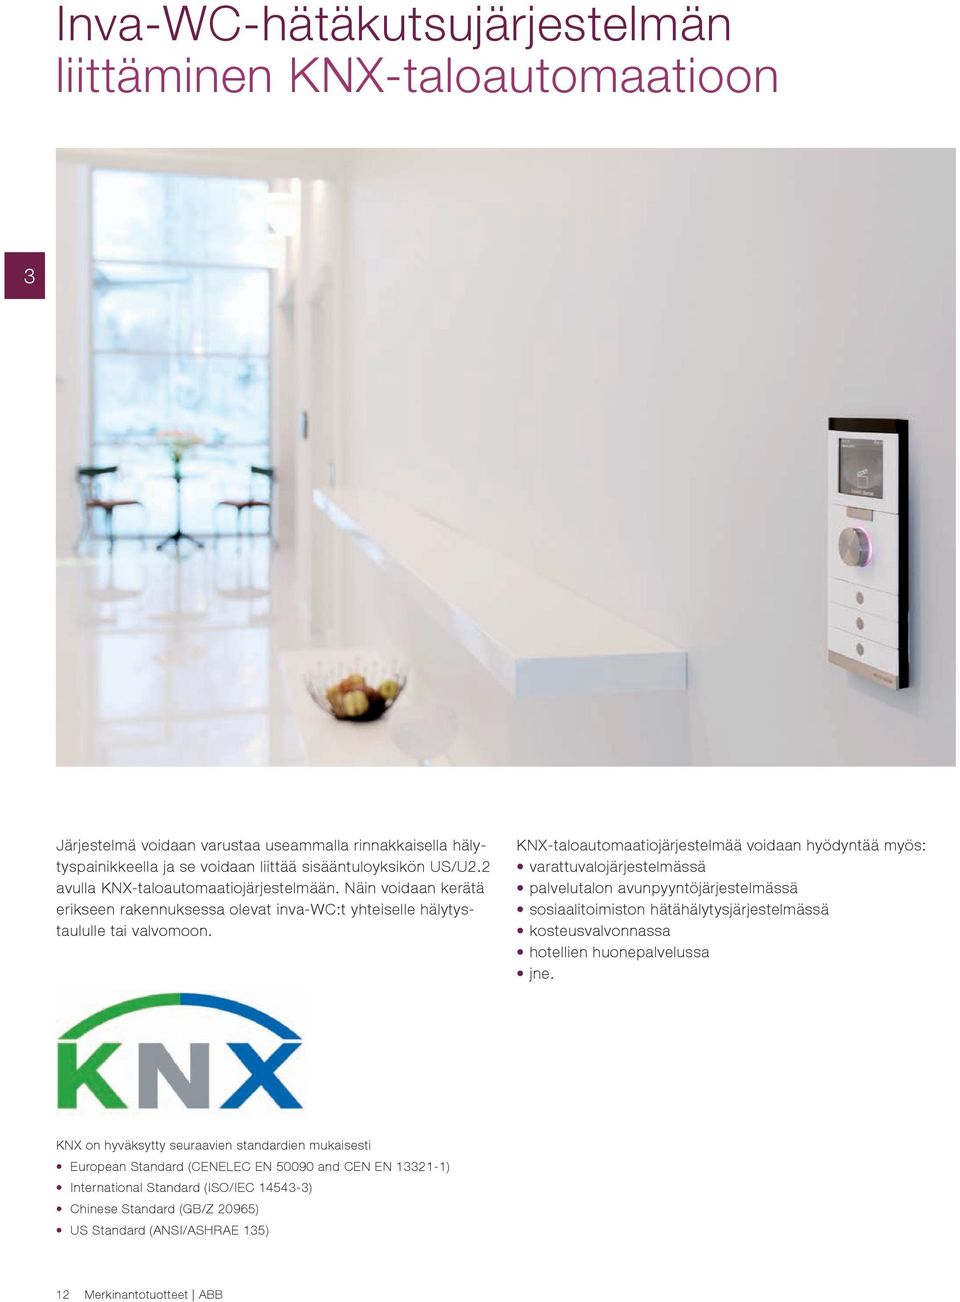 KNX-taloautomaatiojärjestelmää voidaan hyödyntää myös: varattuvalojärjestelmässä palvelutalon avunpyyntöjärjestelmässä sosiaalitoimiston hätähälytysjärjestelmässä kosteusvalvonnassa